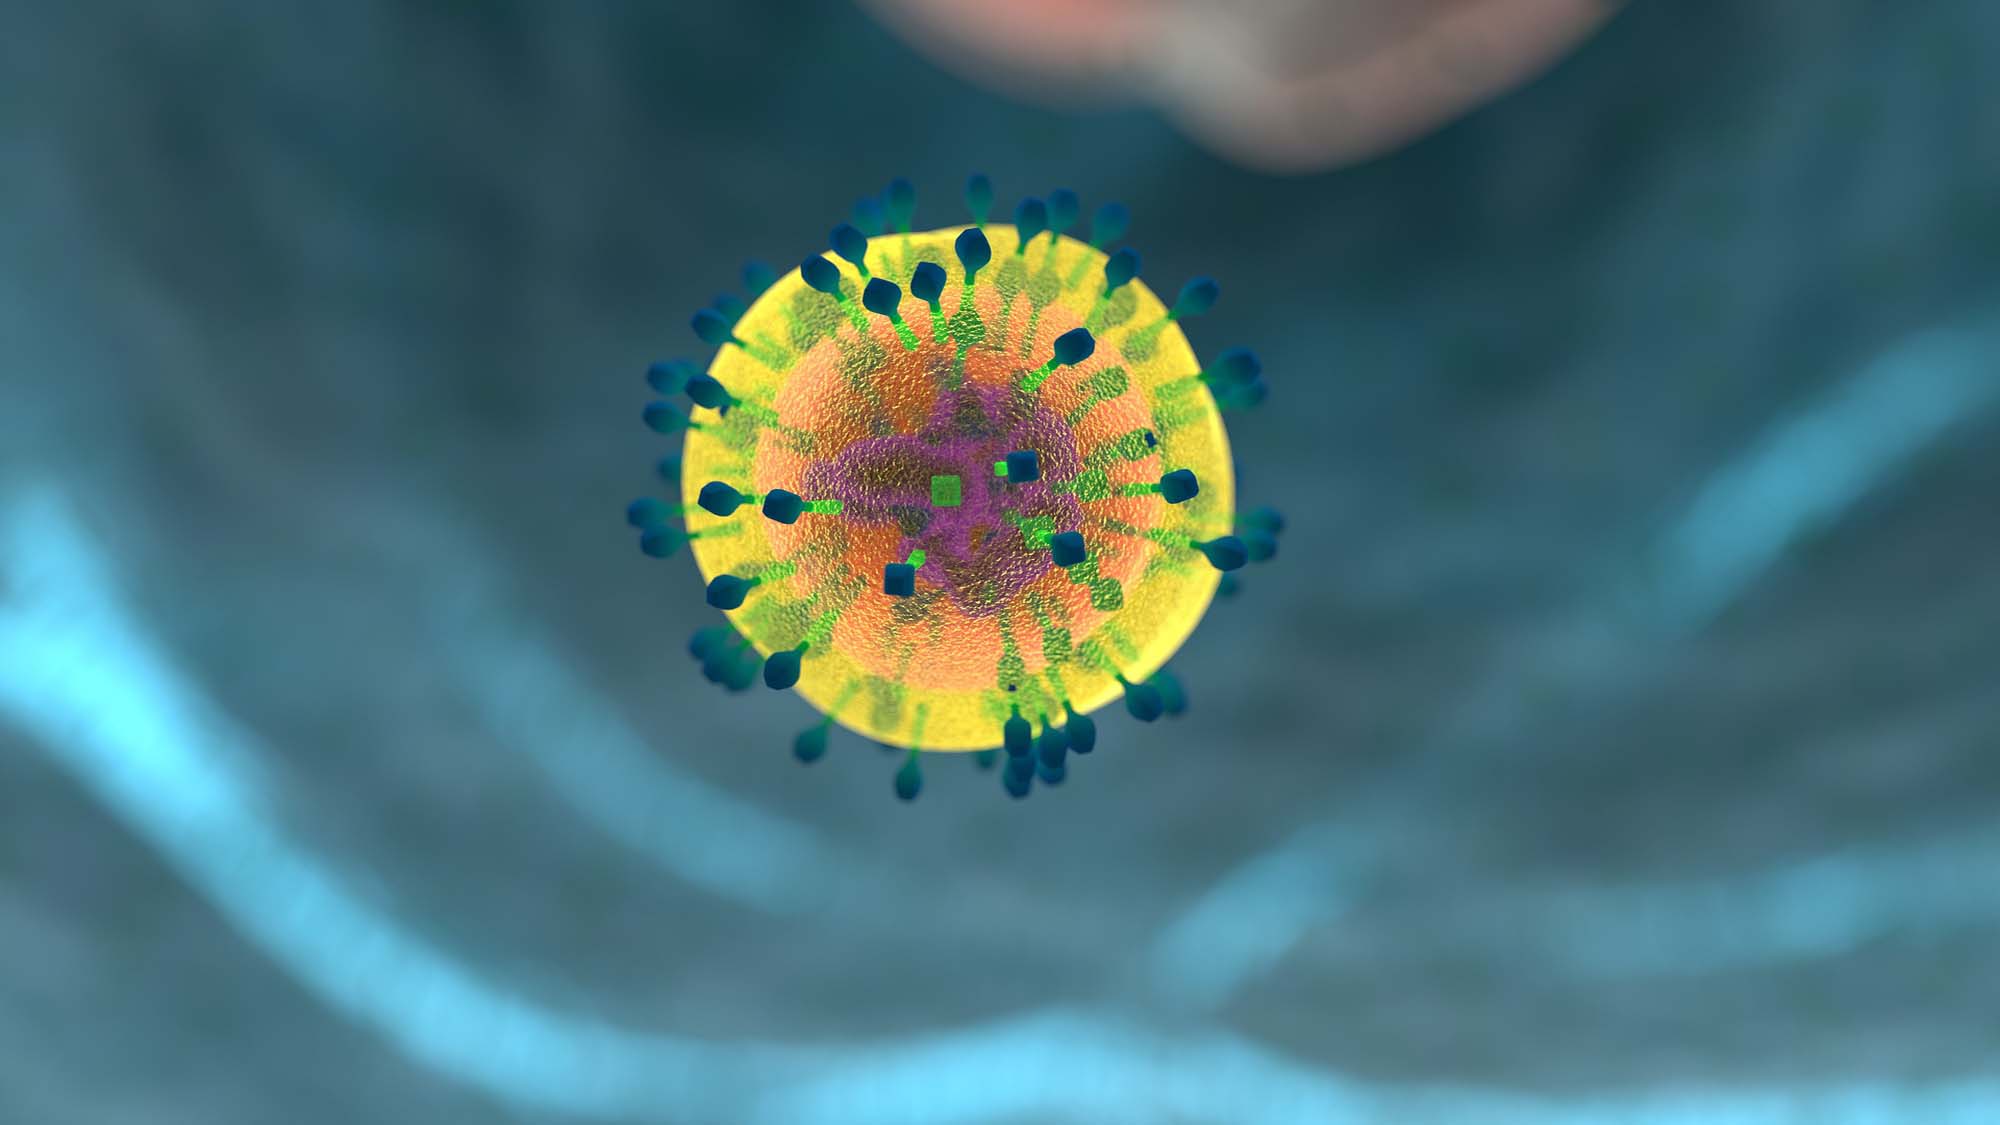 Investigadores descubren que NFAT5 ayuda a controlar los niveles de interferones durante la respuesta inmune. | Imagen de allinonemovie en Pixabay.